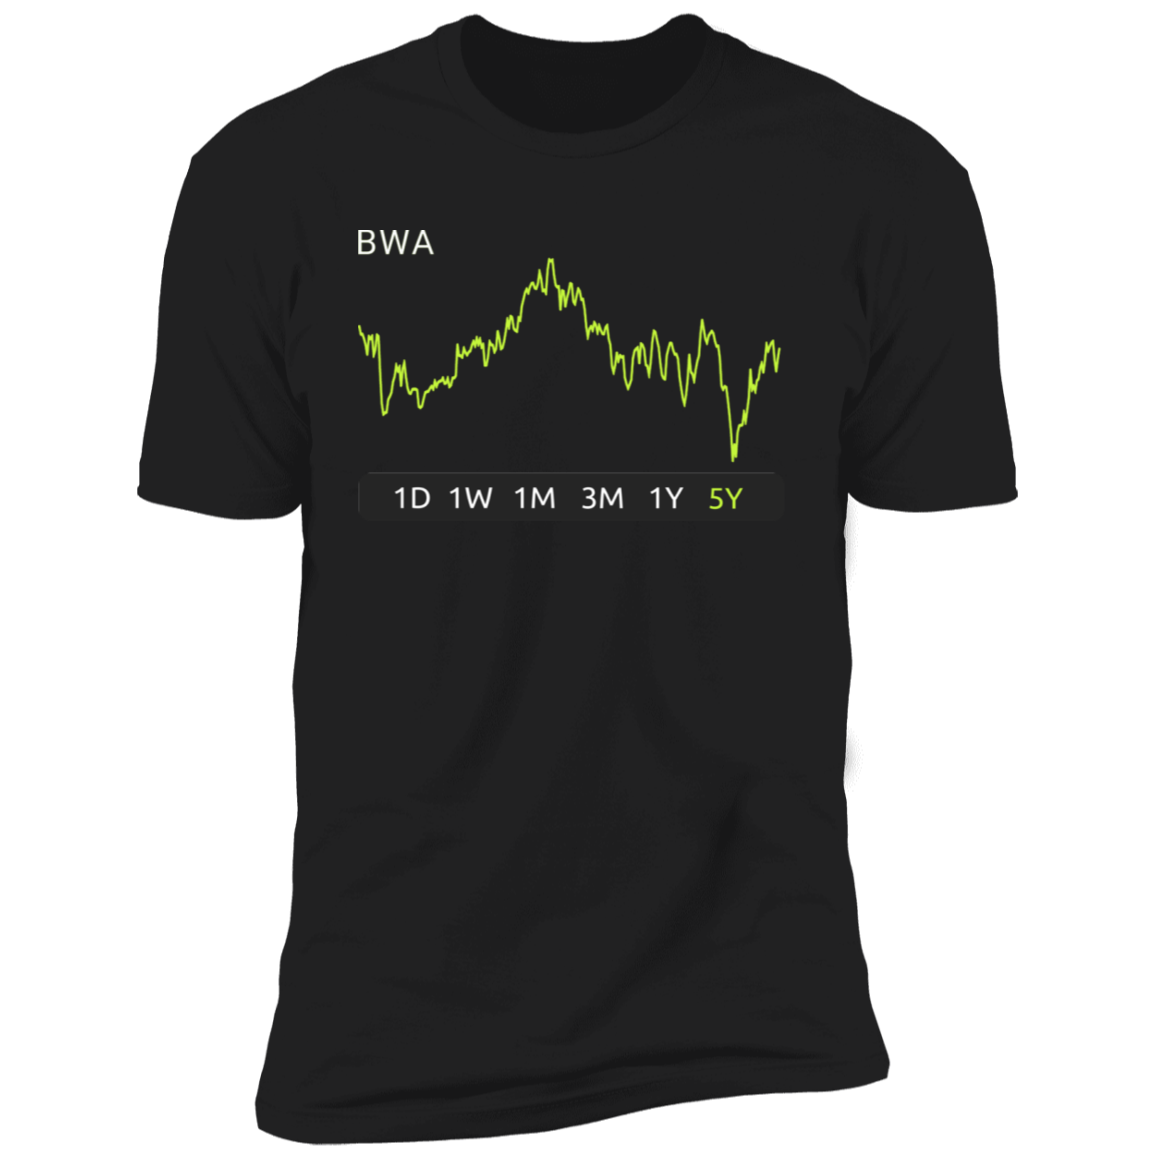 BWA Stock 5y Premium T-Shirt